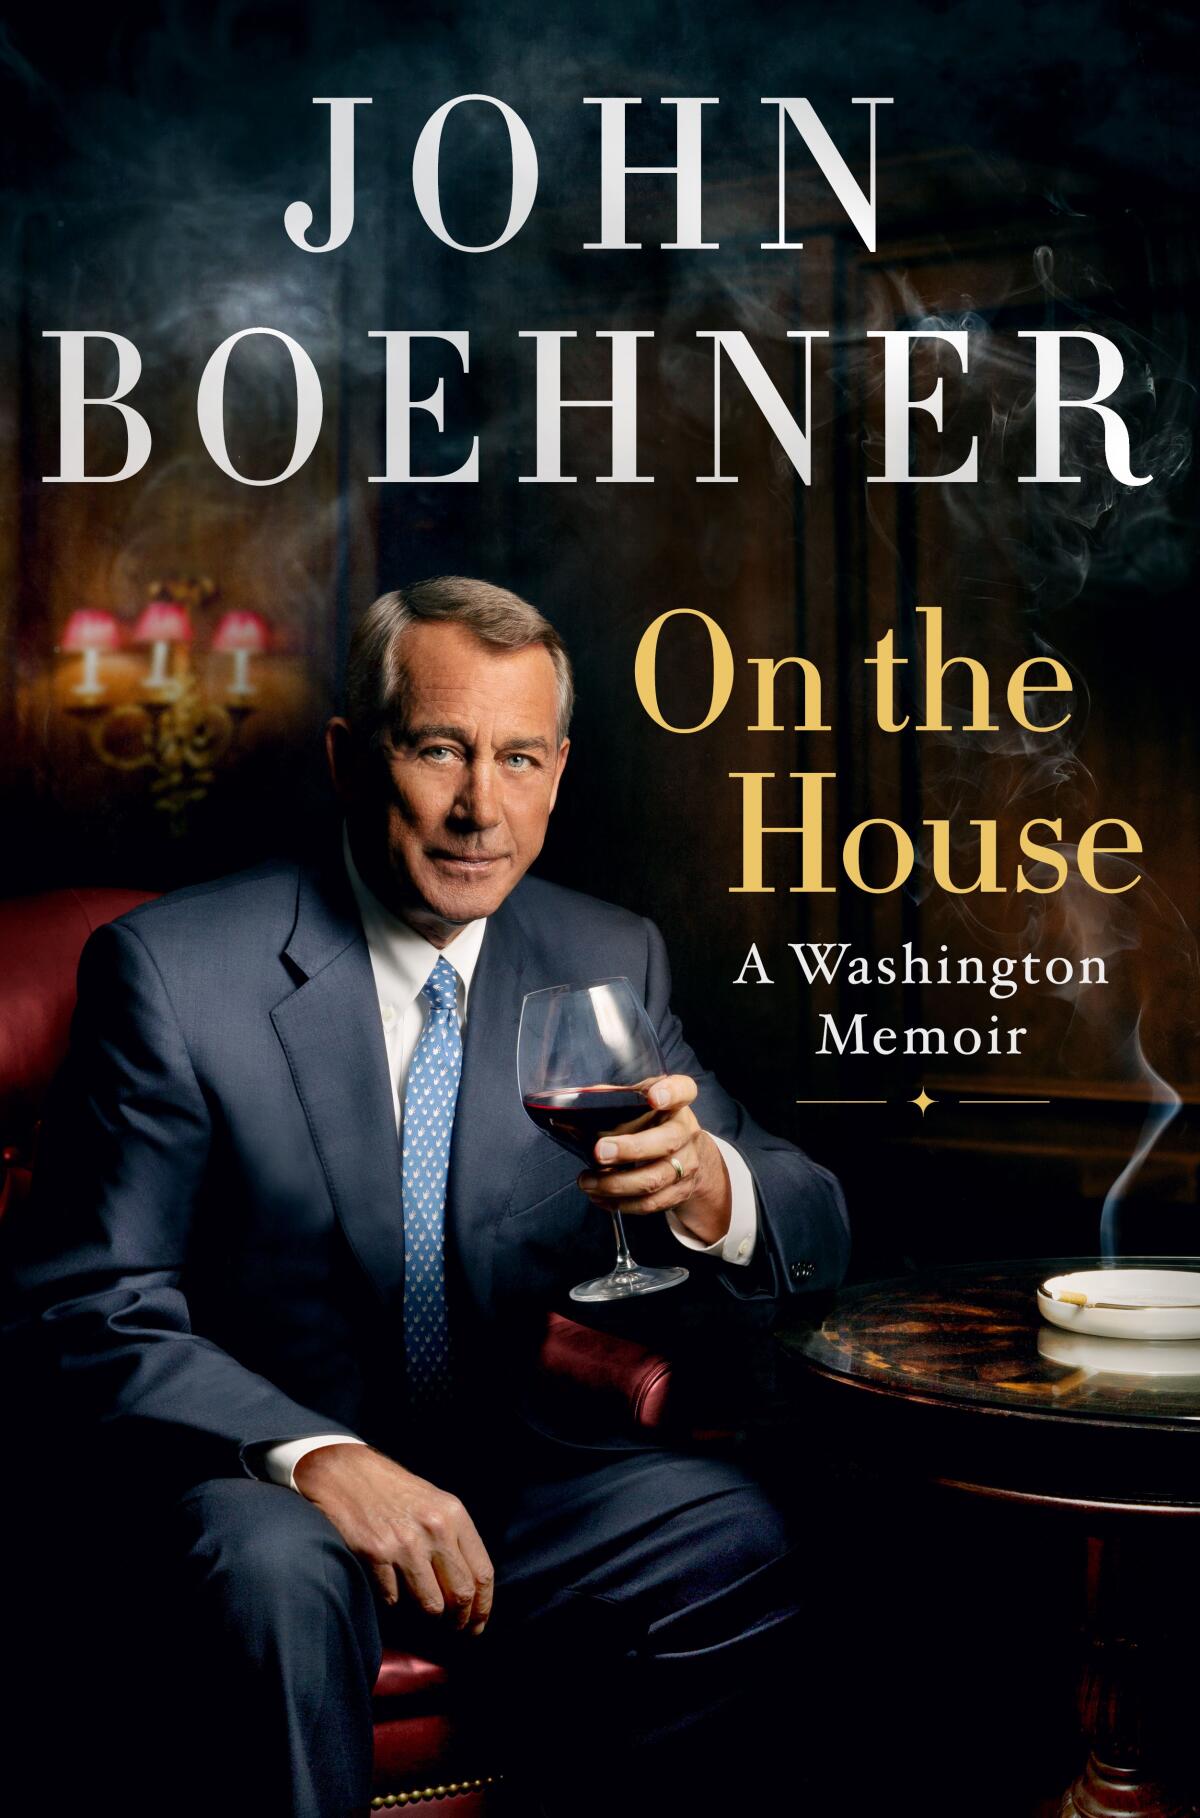 The cover of former House Speaker John Boehner's new book.